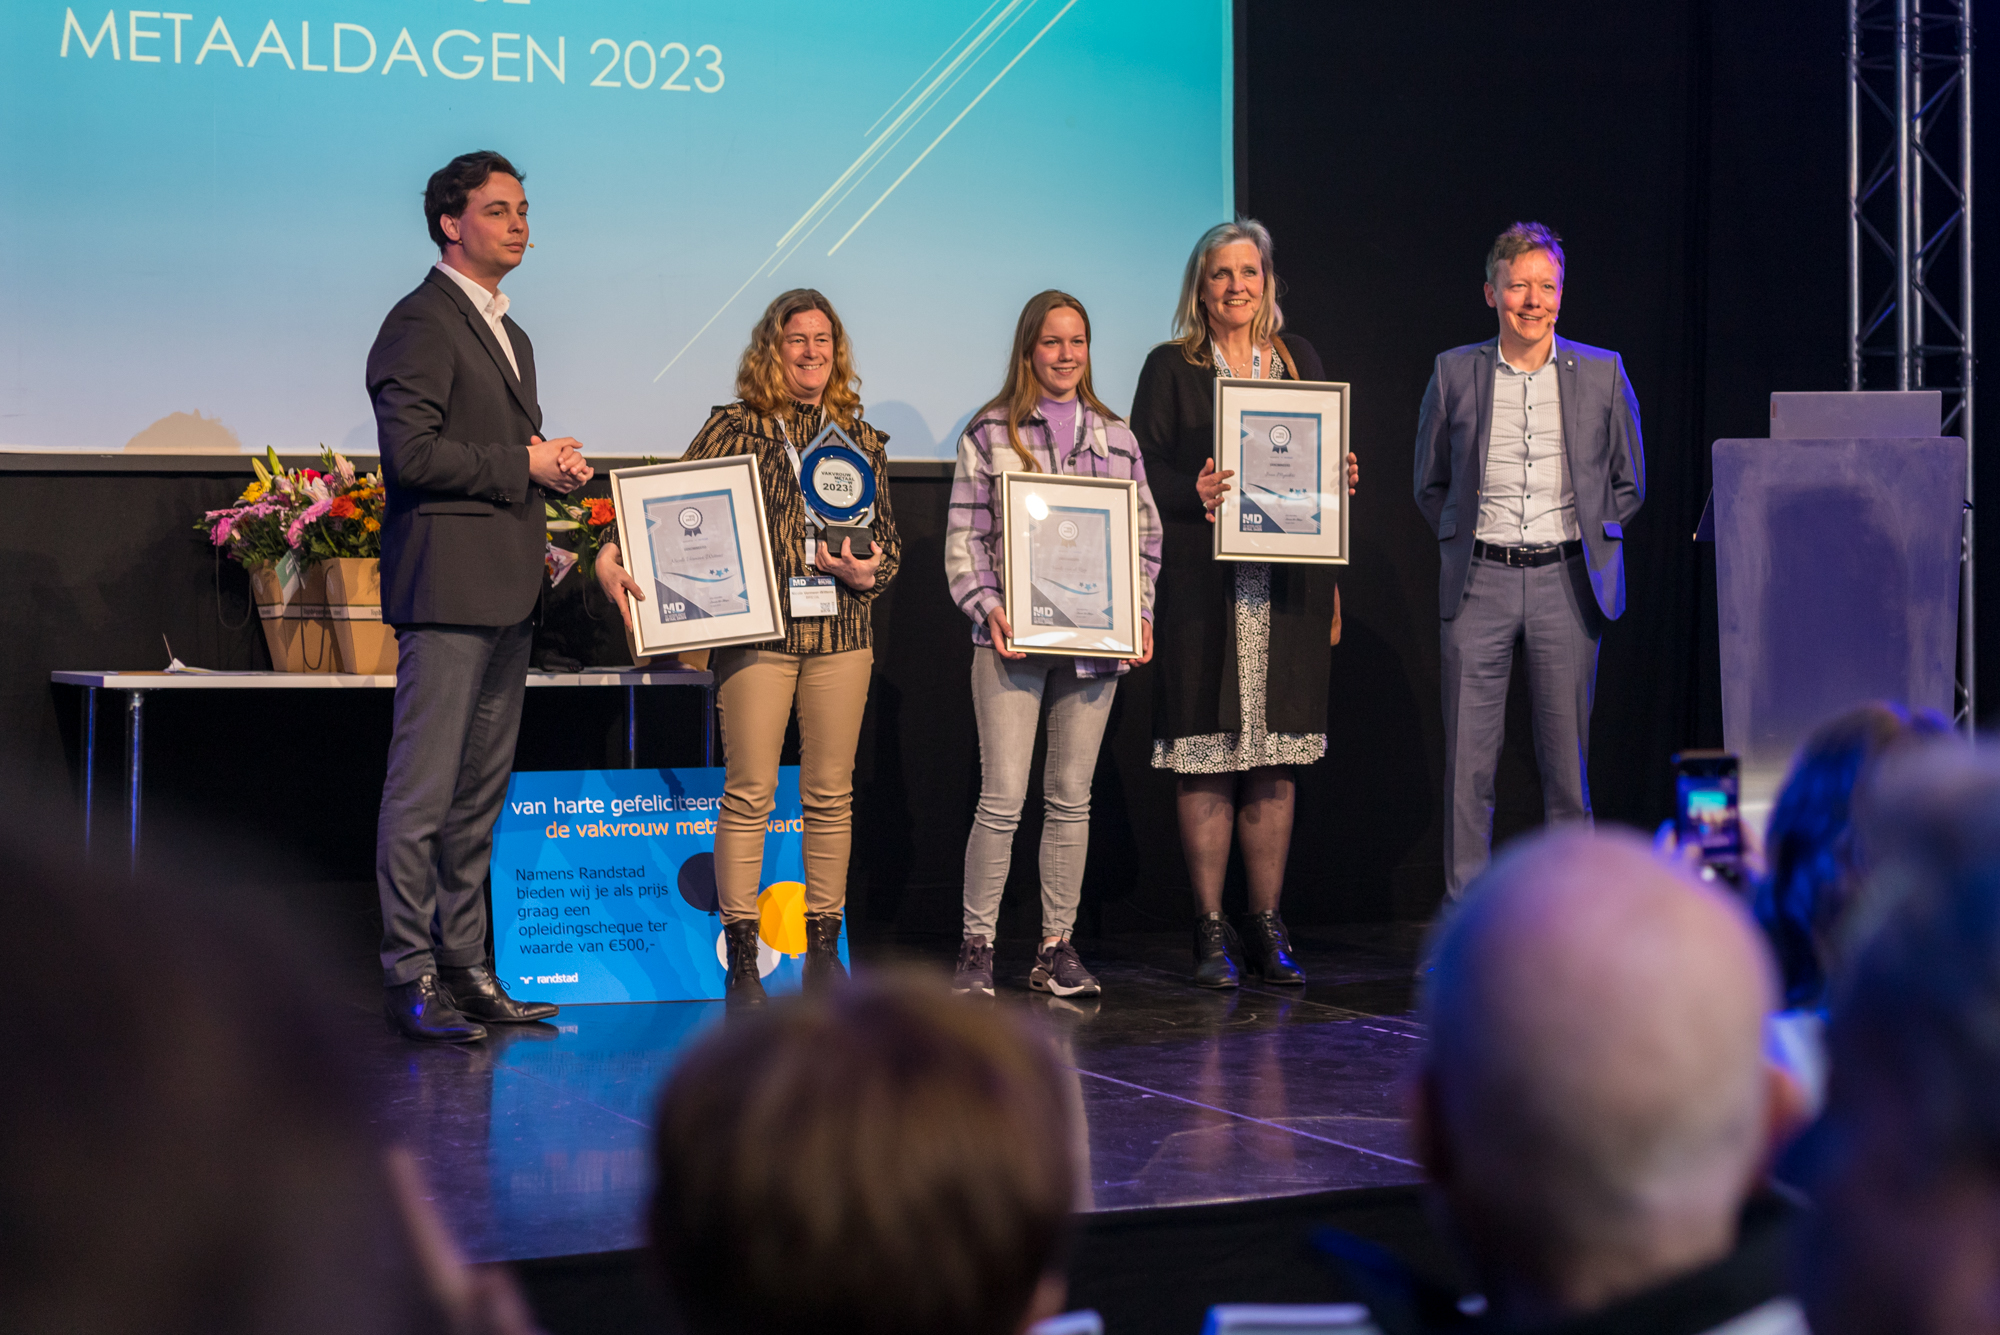 De Nederlandse Metaal Dagen - Uitreiking van de Metaal Awards 2023: Erkenning in de metaalindustrie